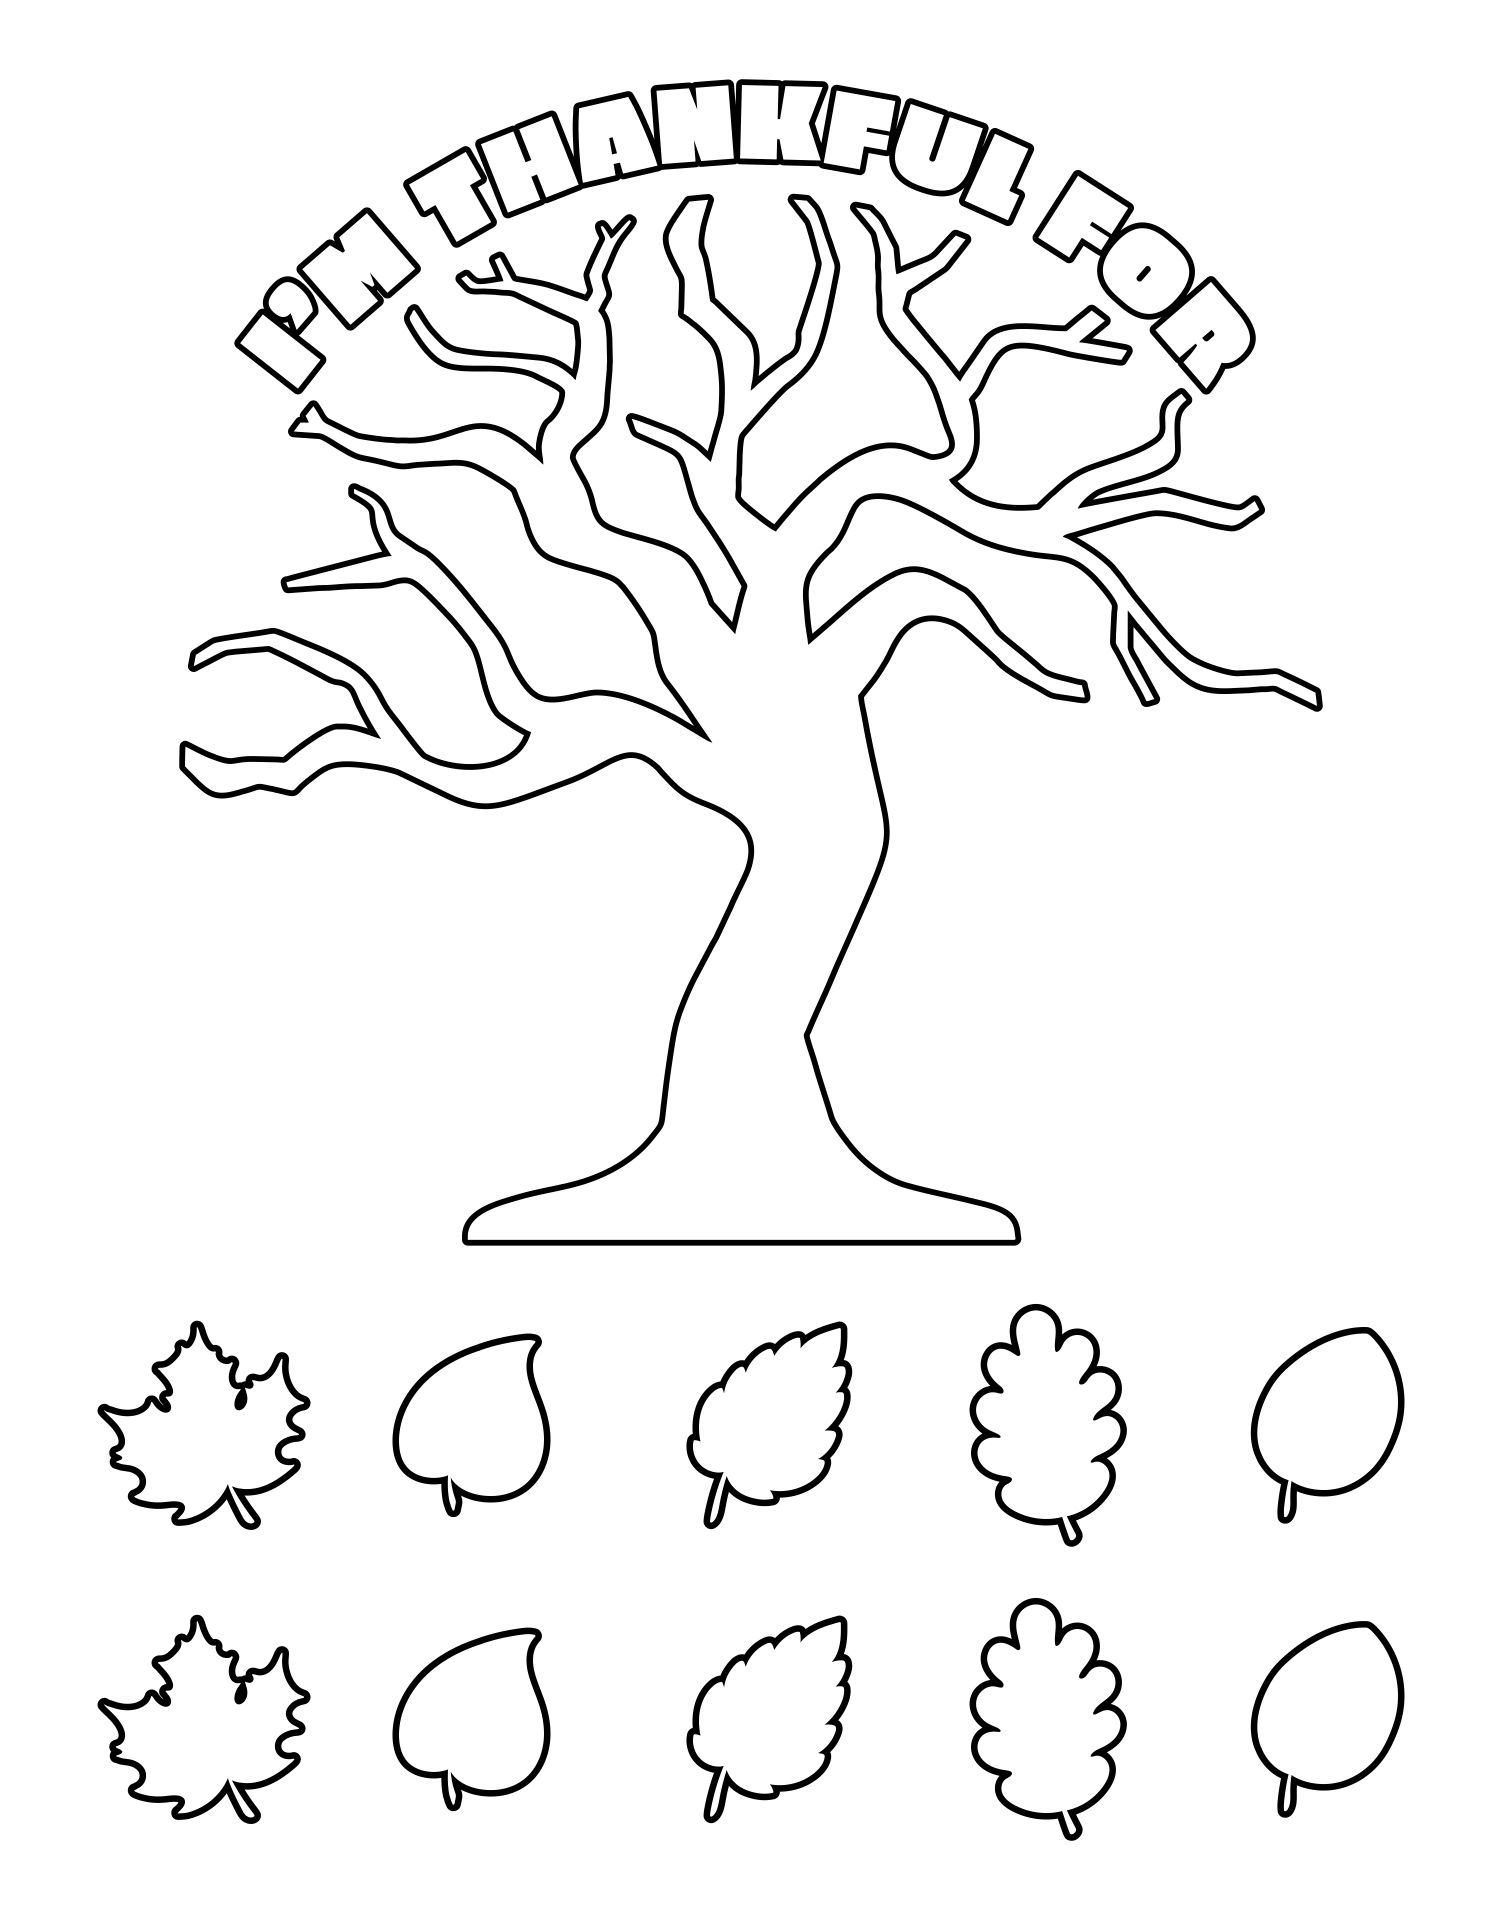 Printable Thankful Tree